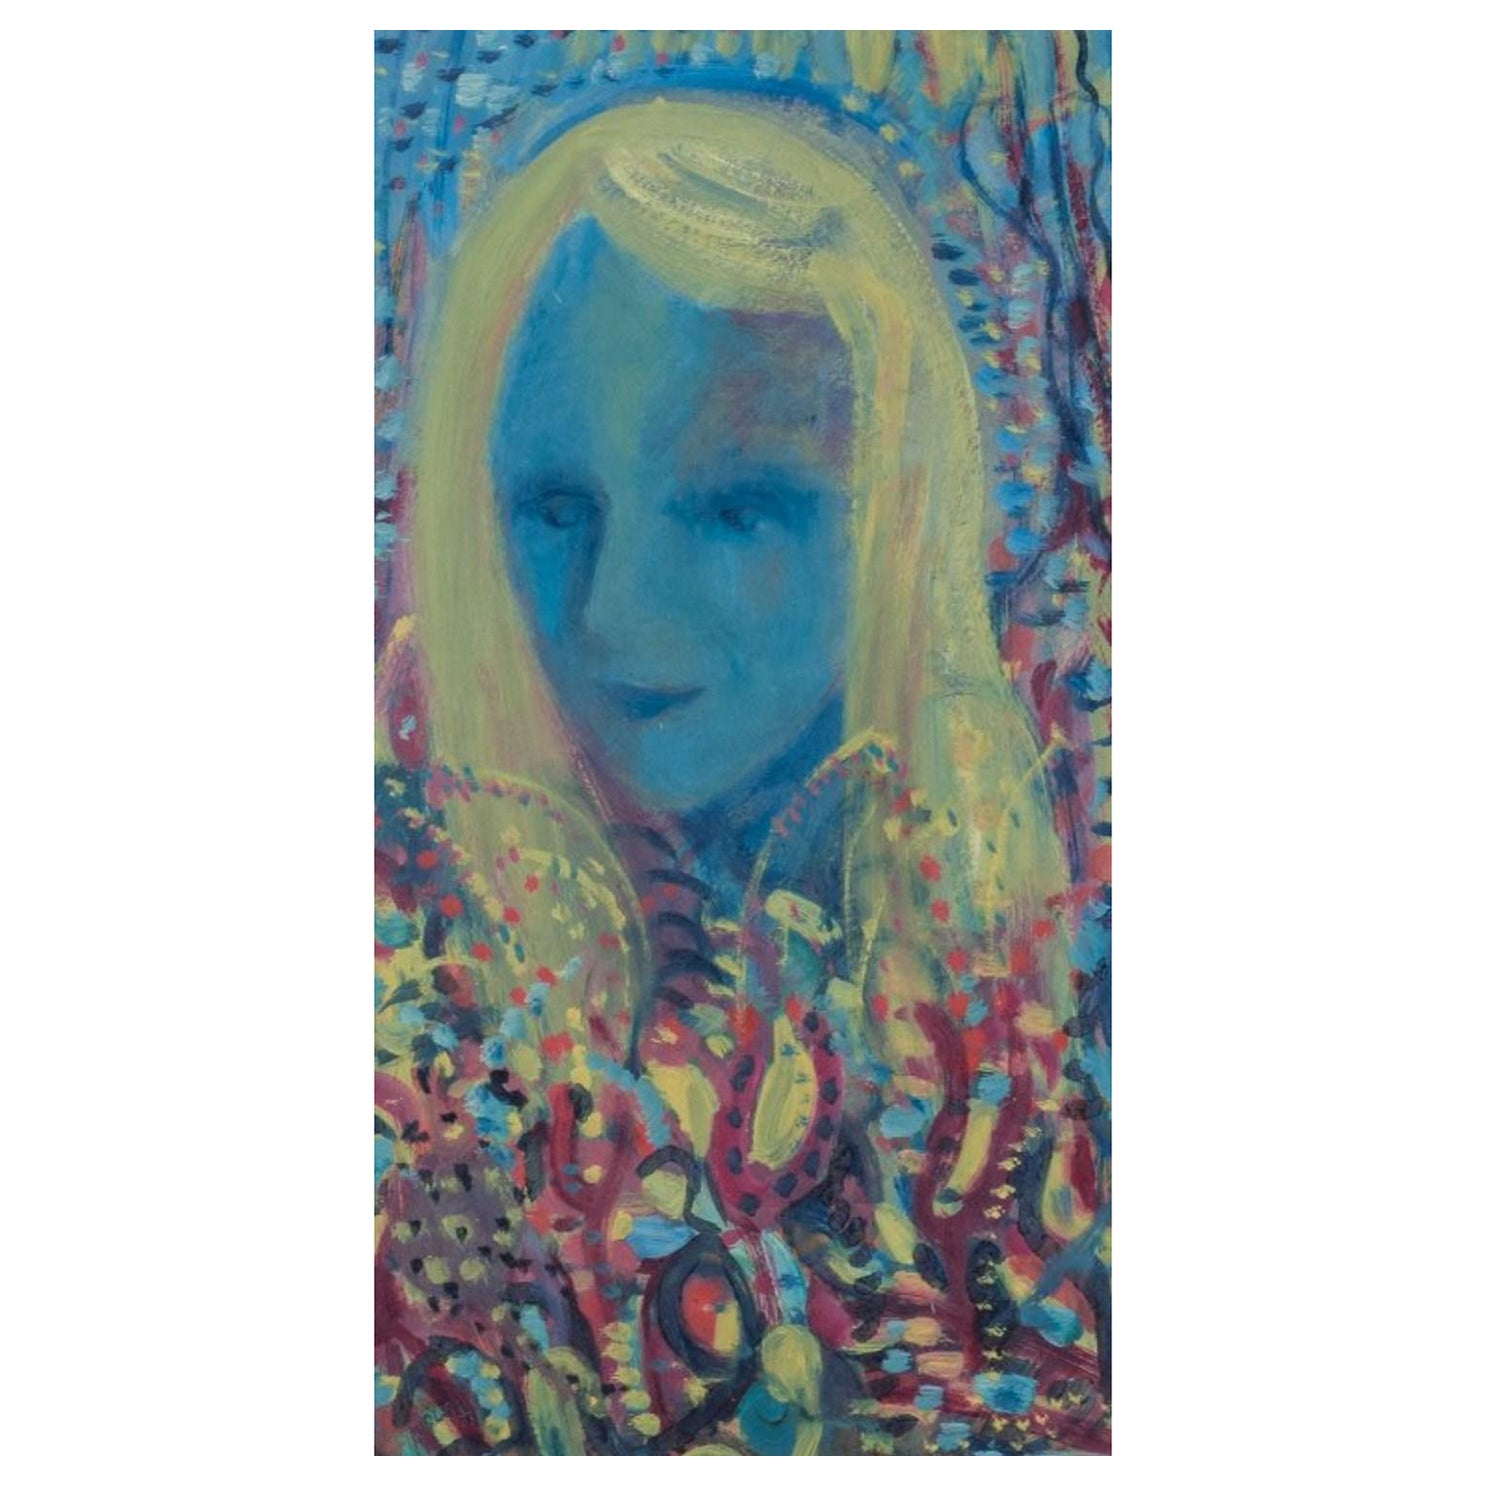 Lennart Pilotti (1912-1981), Swedish artist. Oil on board. Portrait of woman For Sale